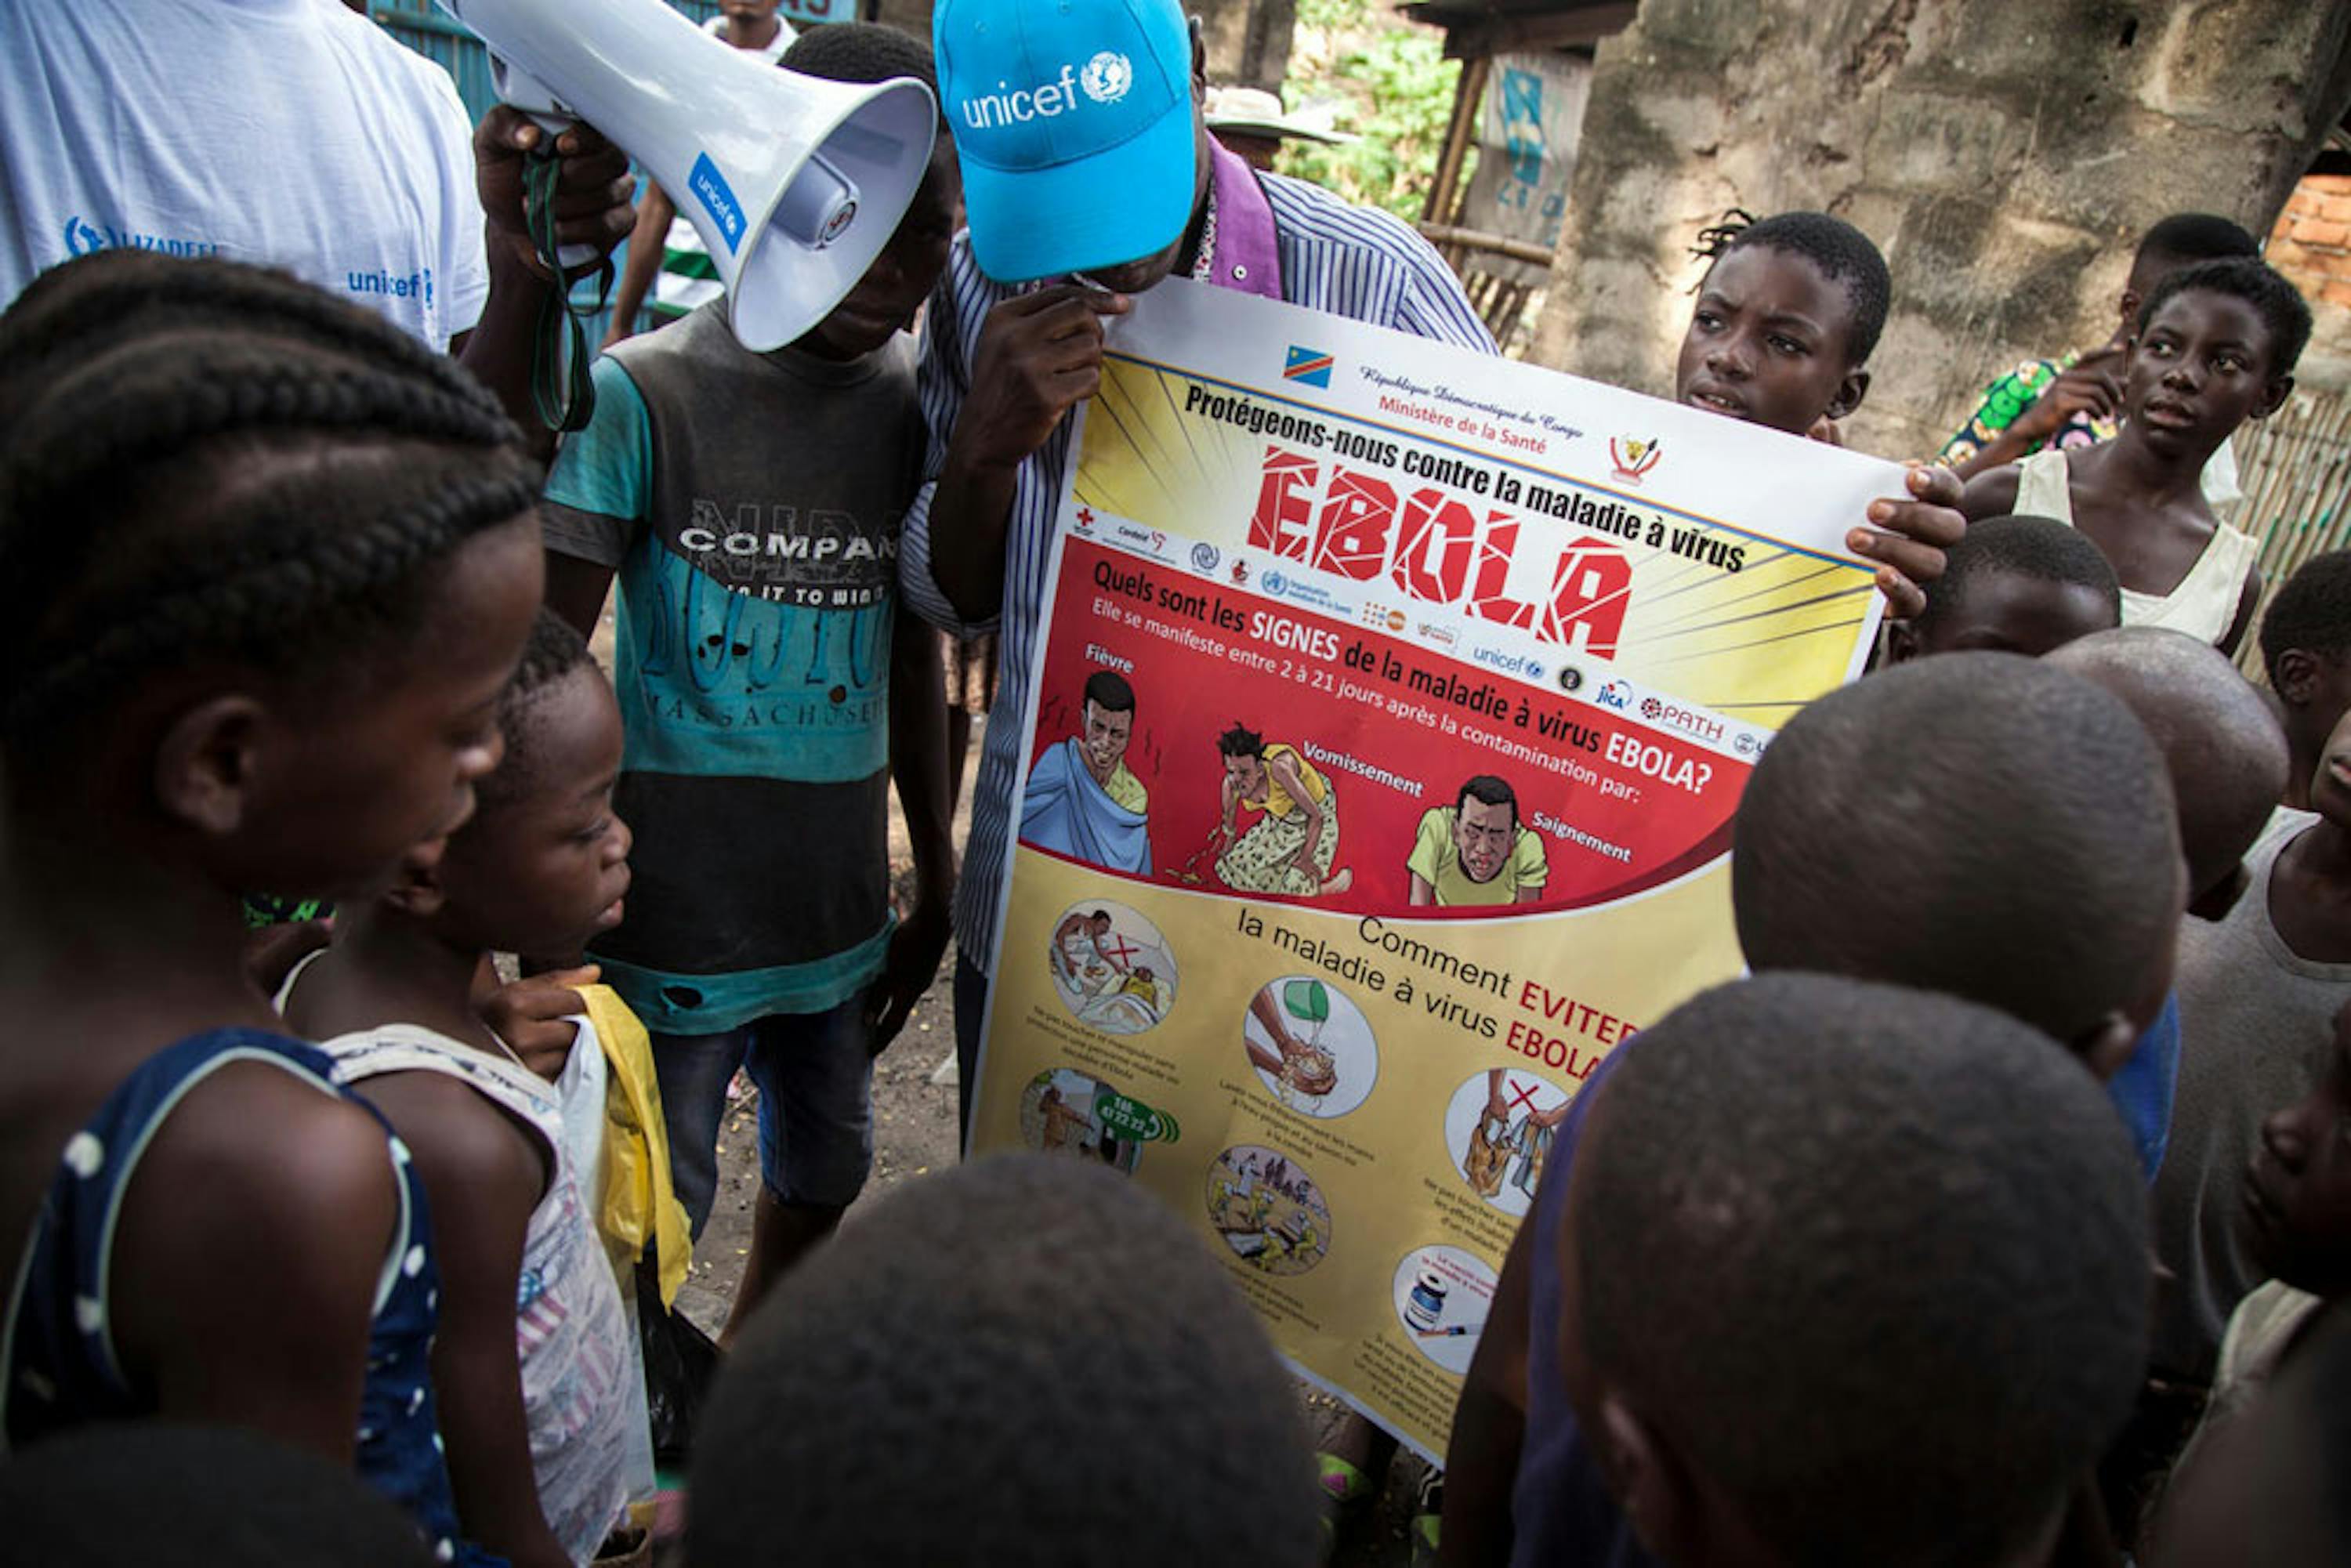 Un momento della campagna di informazione e prevenzione sul virus Ebola promossa dall'UNICEF a Mbandaka (Repubblica Democratica del Congo) - ©UNICEF/UN0215064/Naftalin